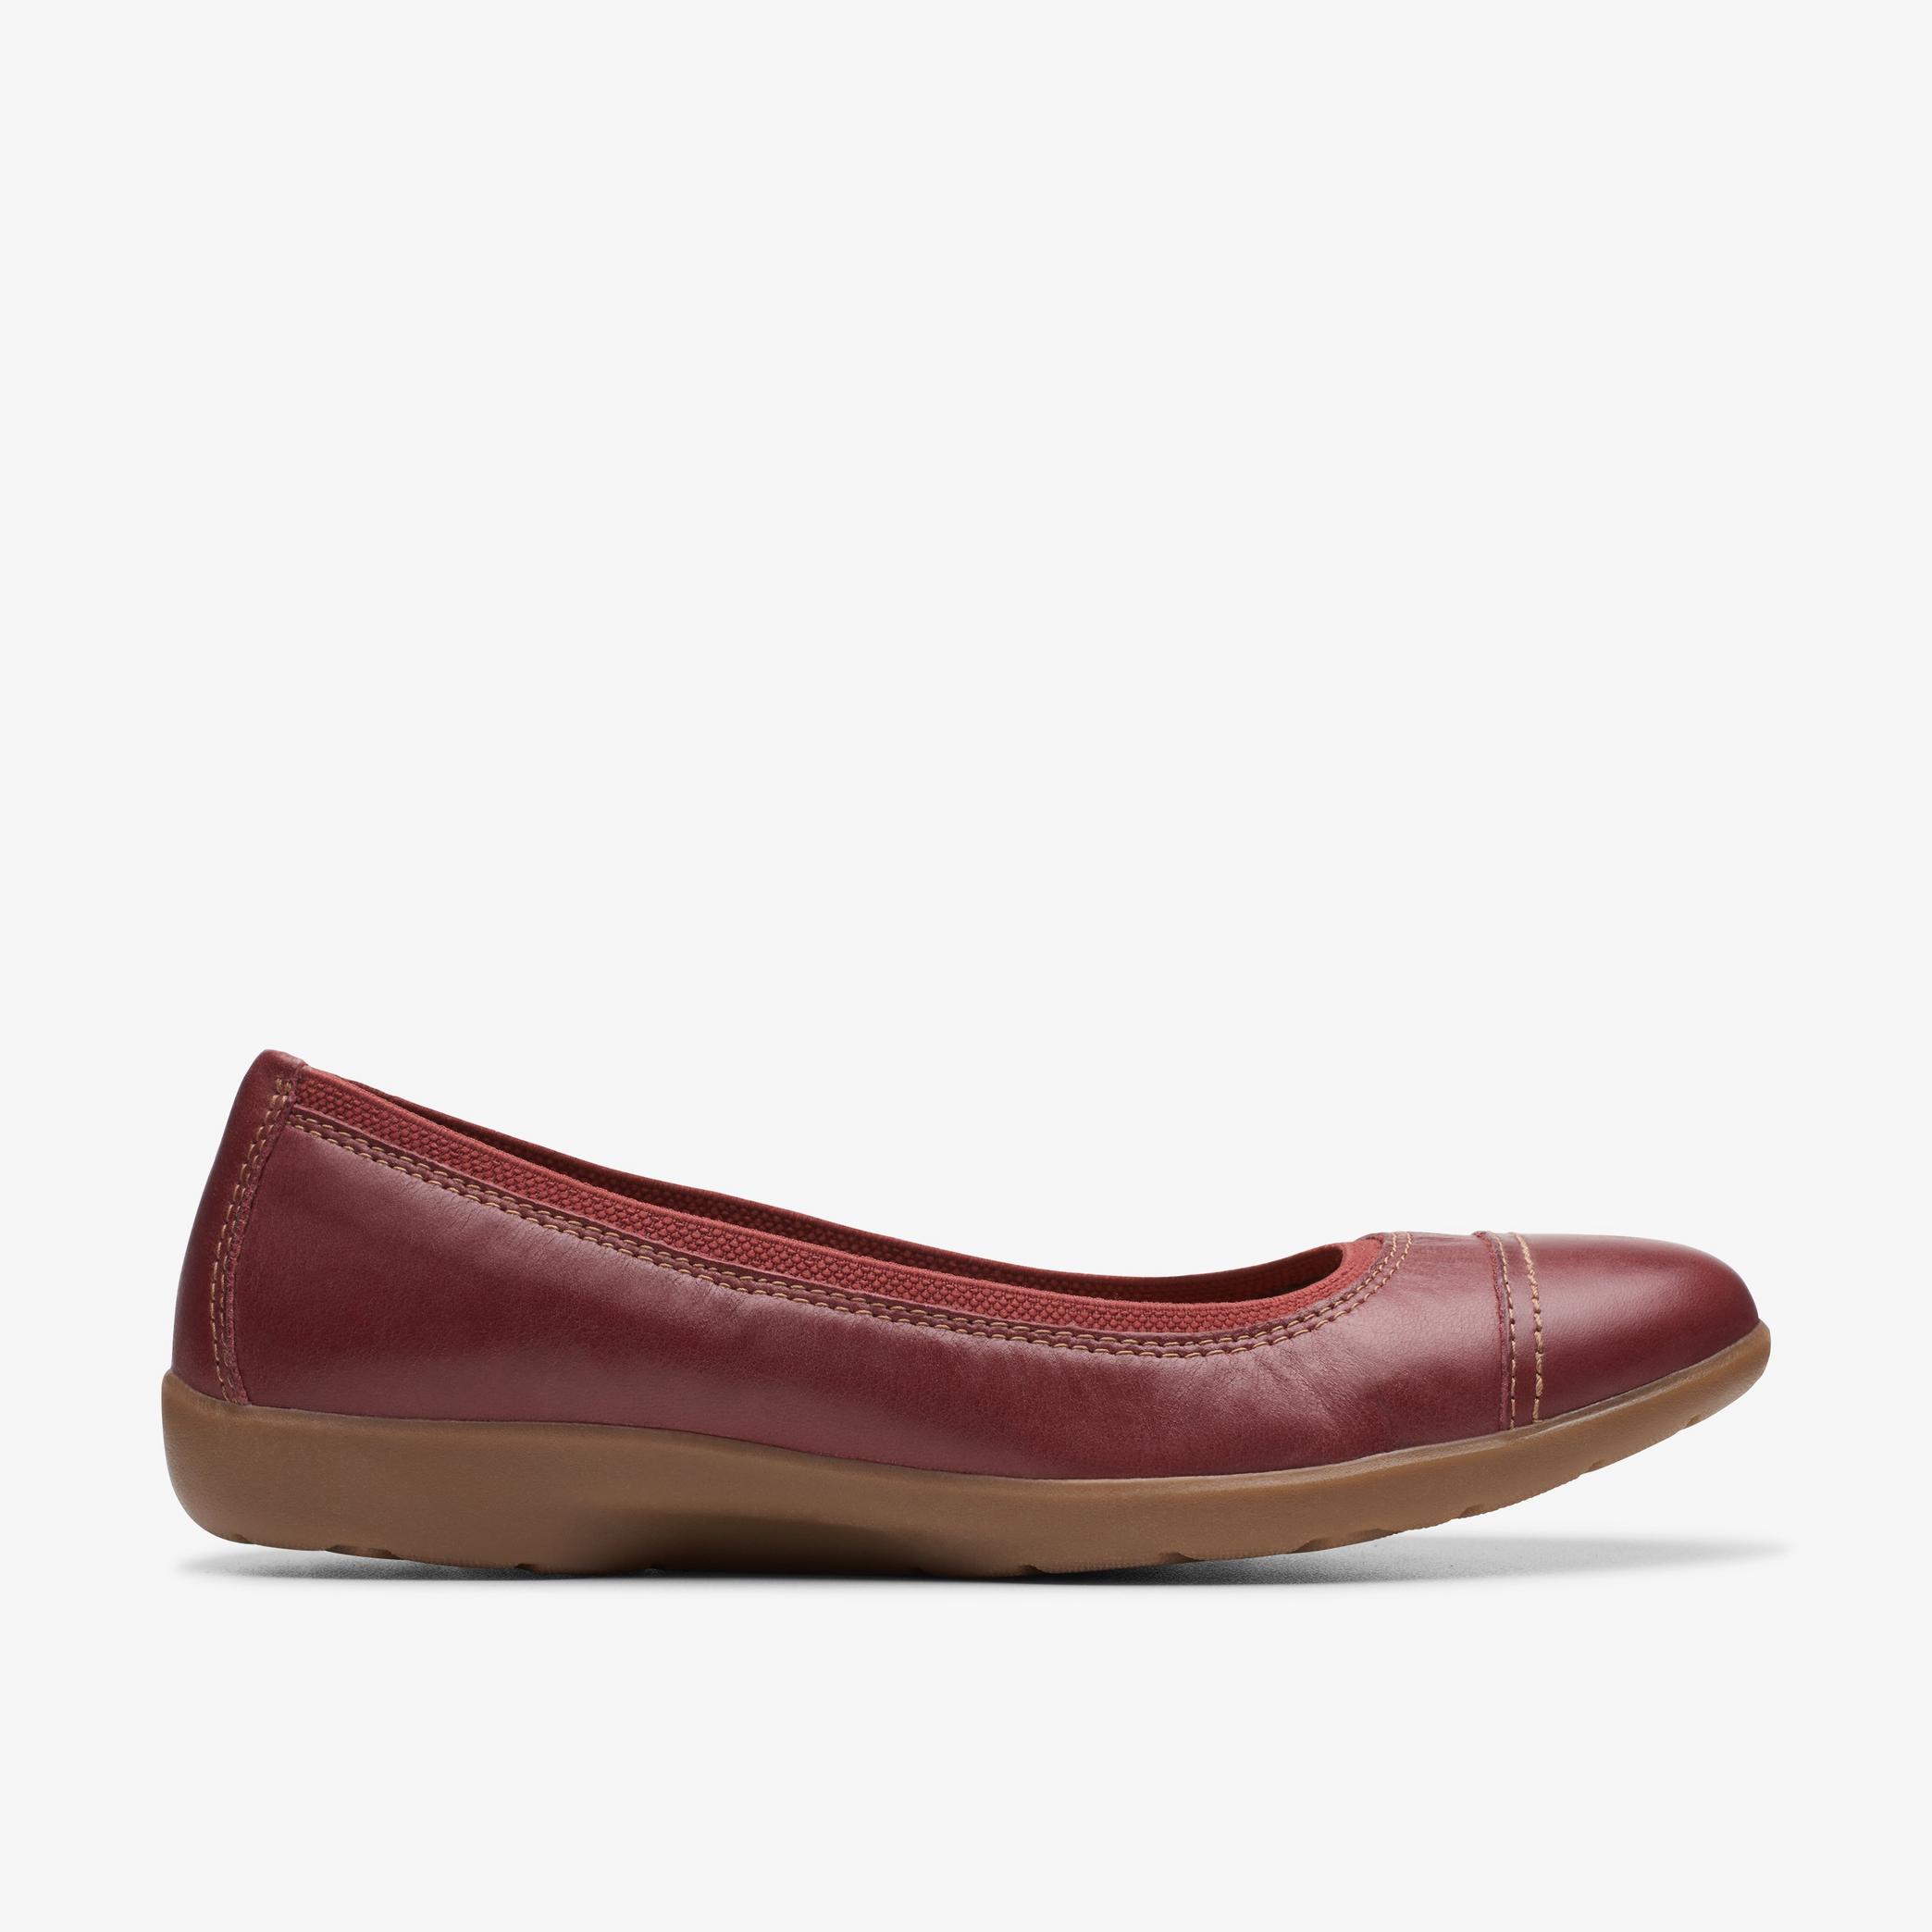 Chaussures ballerines en cuir marron opale Meadow, vue 1 de 6